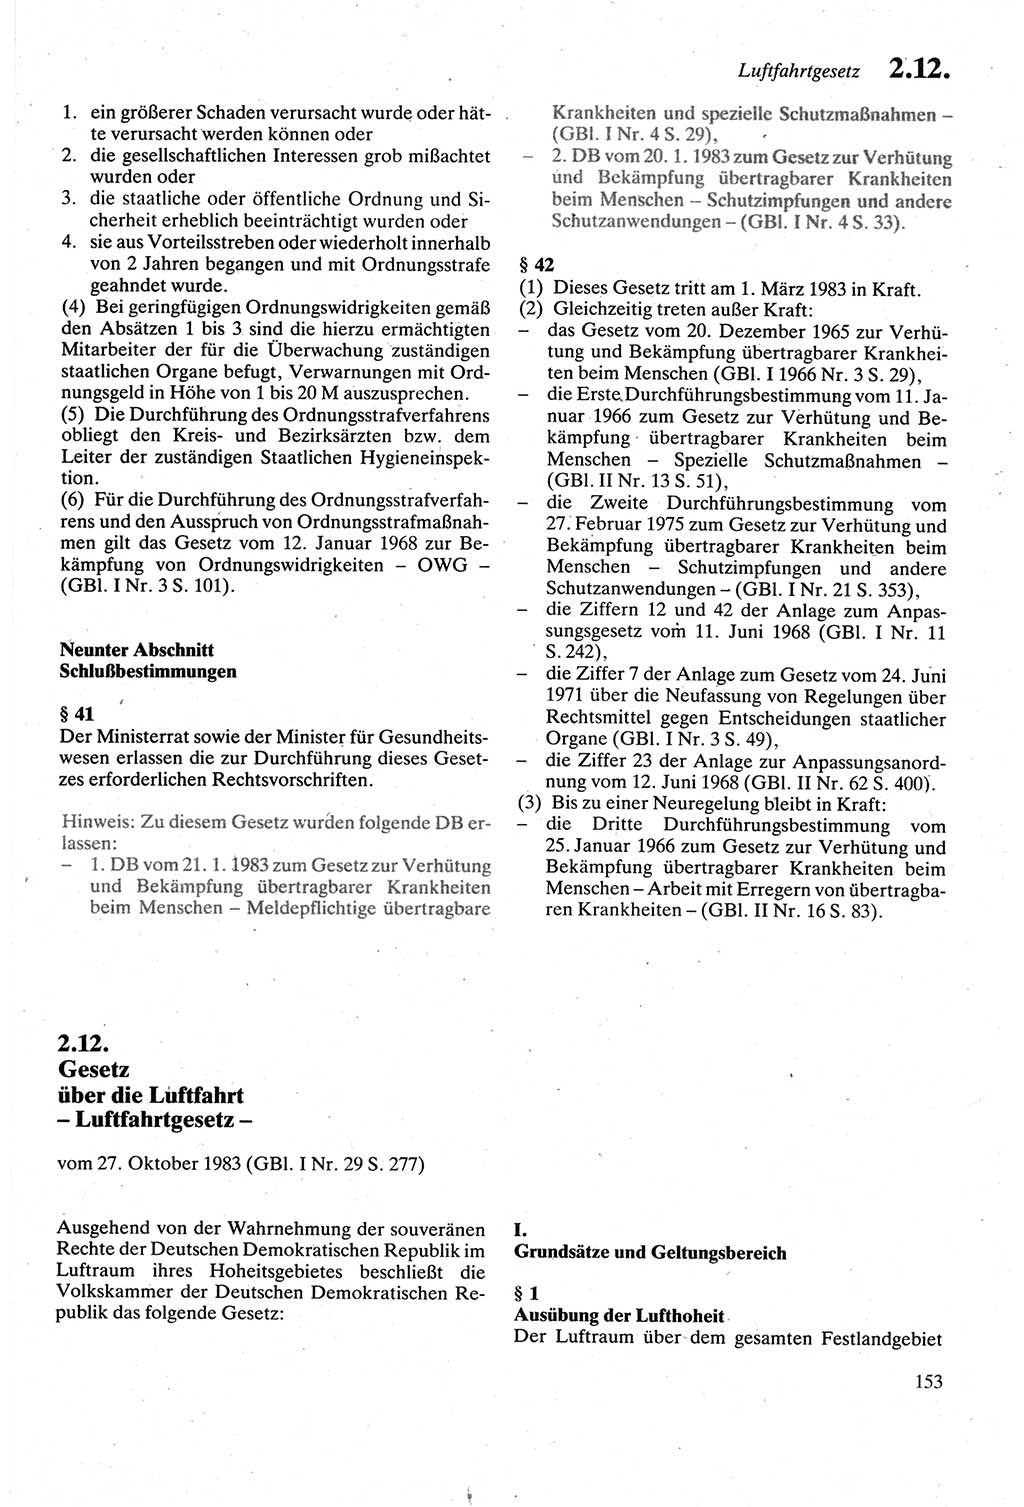 Strafgesetzbuch (StGB) der Deutschen Demokratischen Republik (DDR) sowie angrenzende Gesetze und Bestimmungen 1979, Seite 153 (StGB DDR Ges. Best. 1979, S. 153)